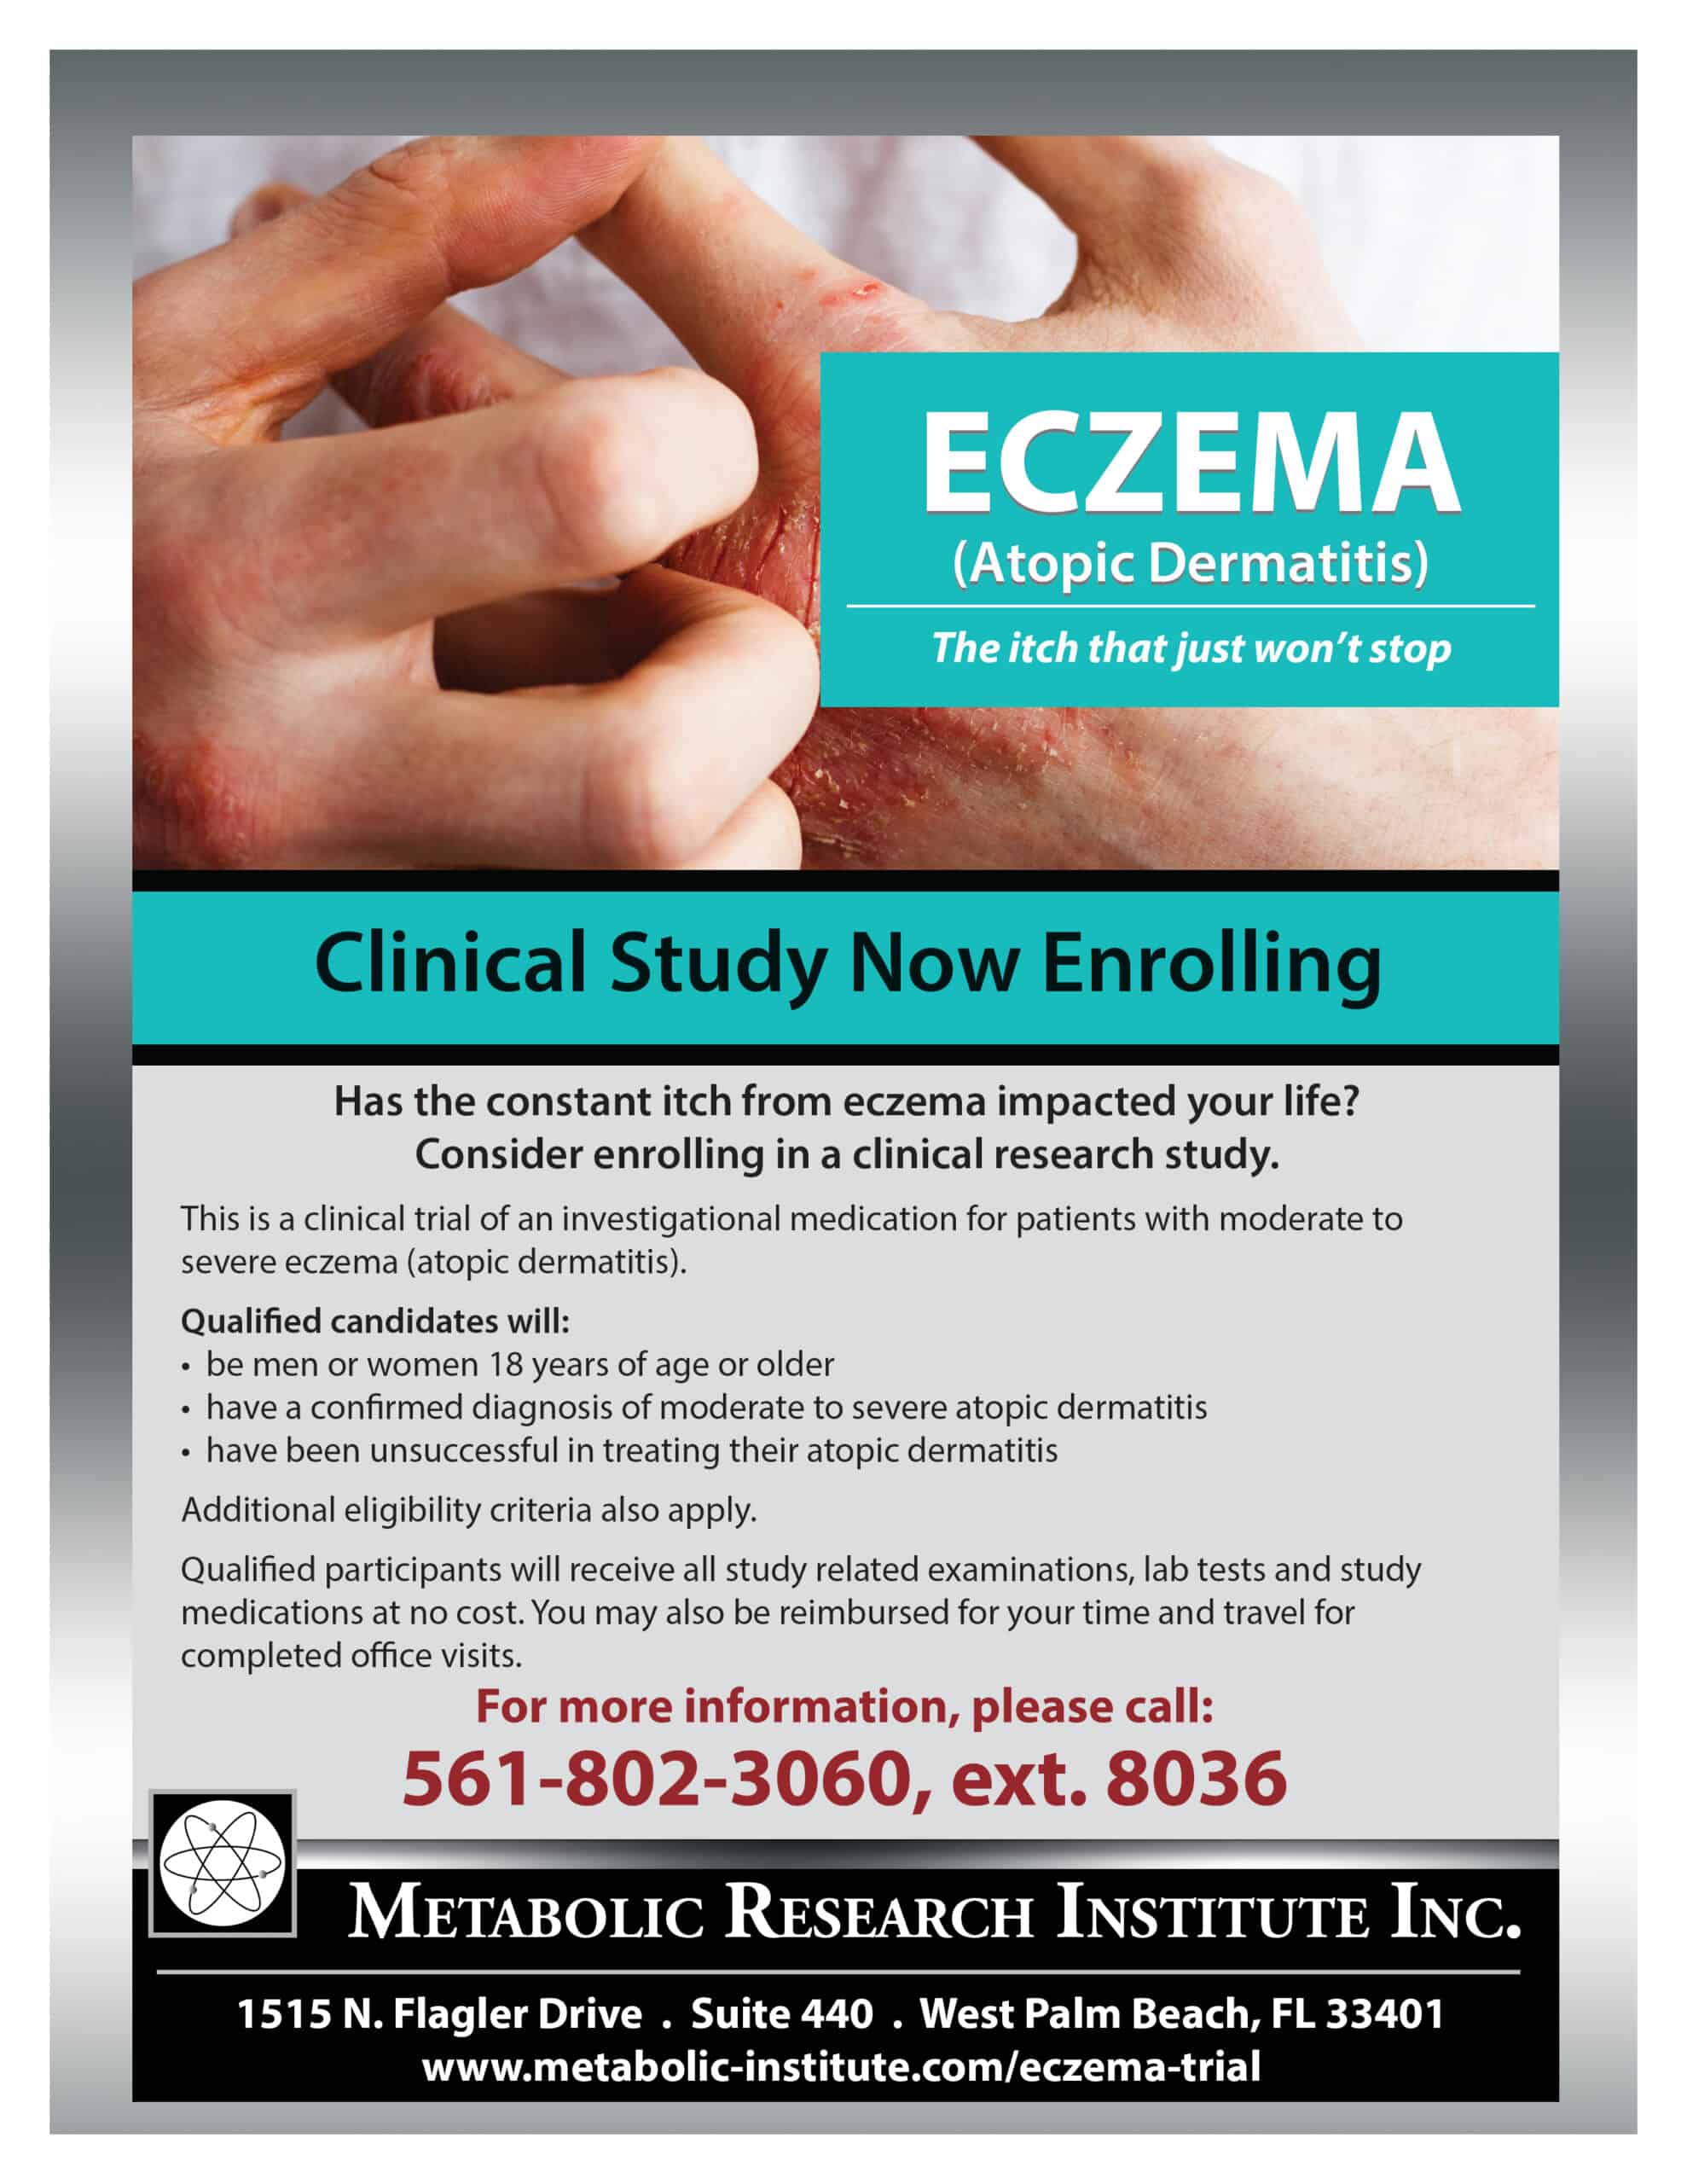 Eczema Trial Clinical Study Flyer